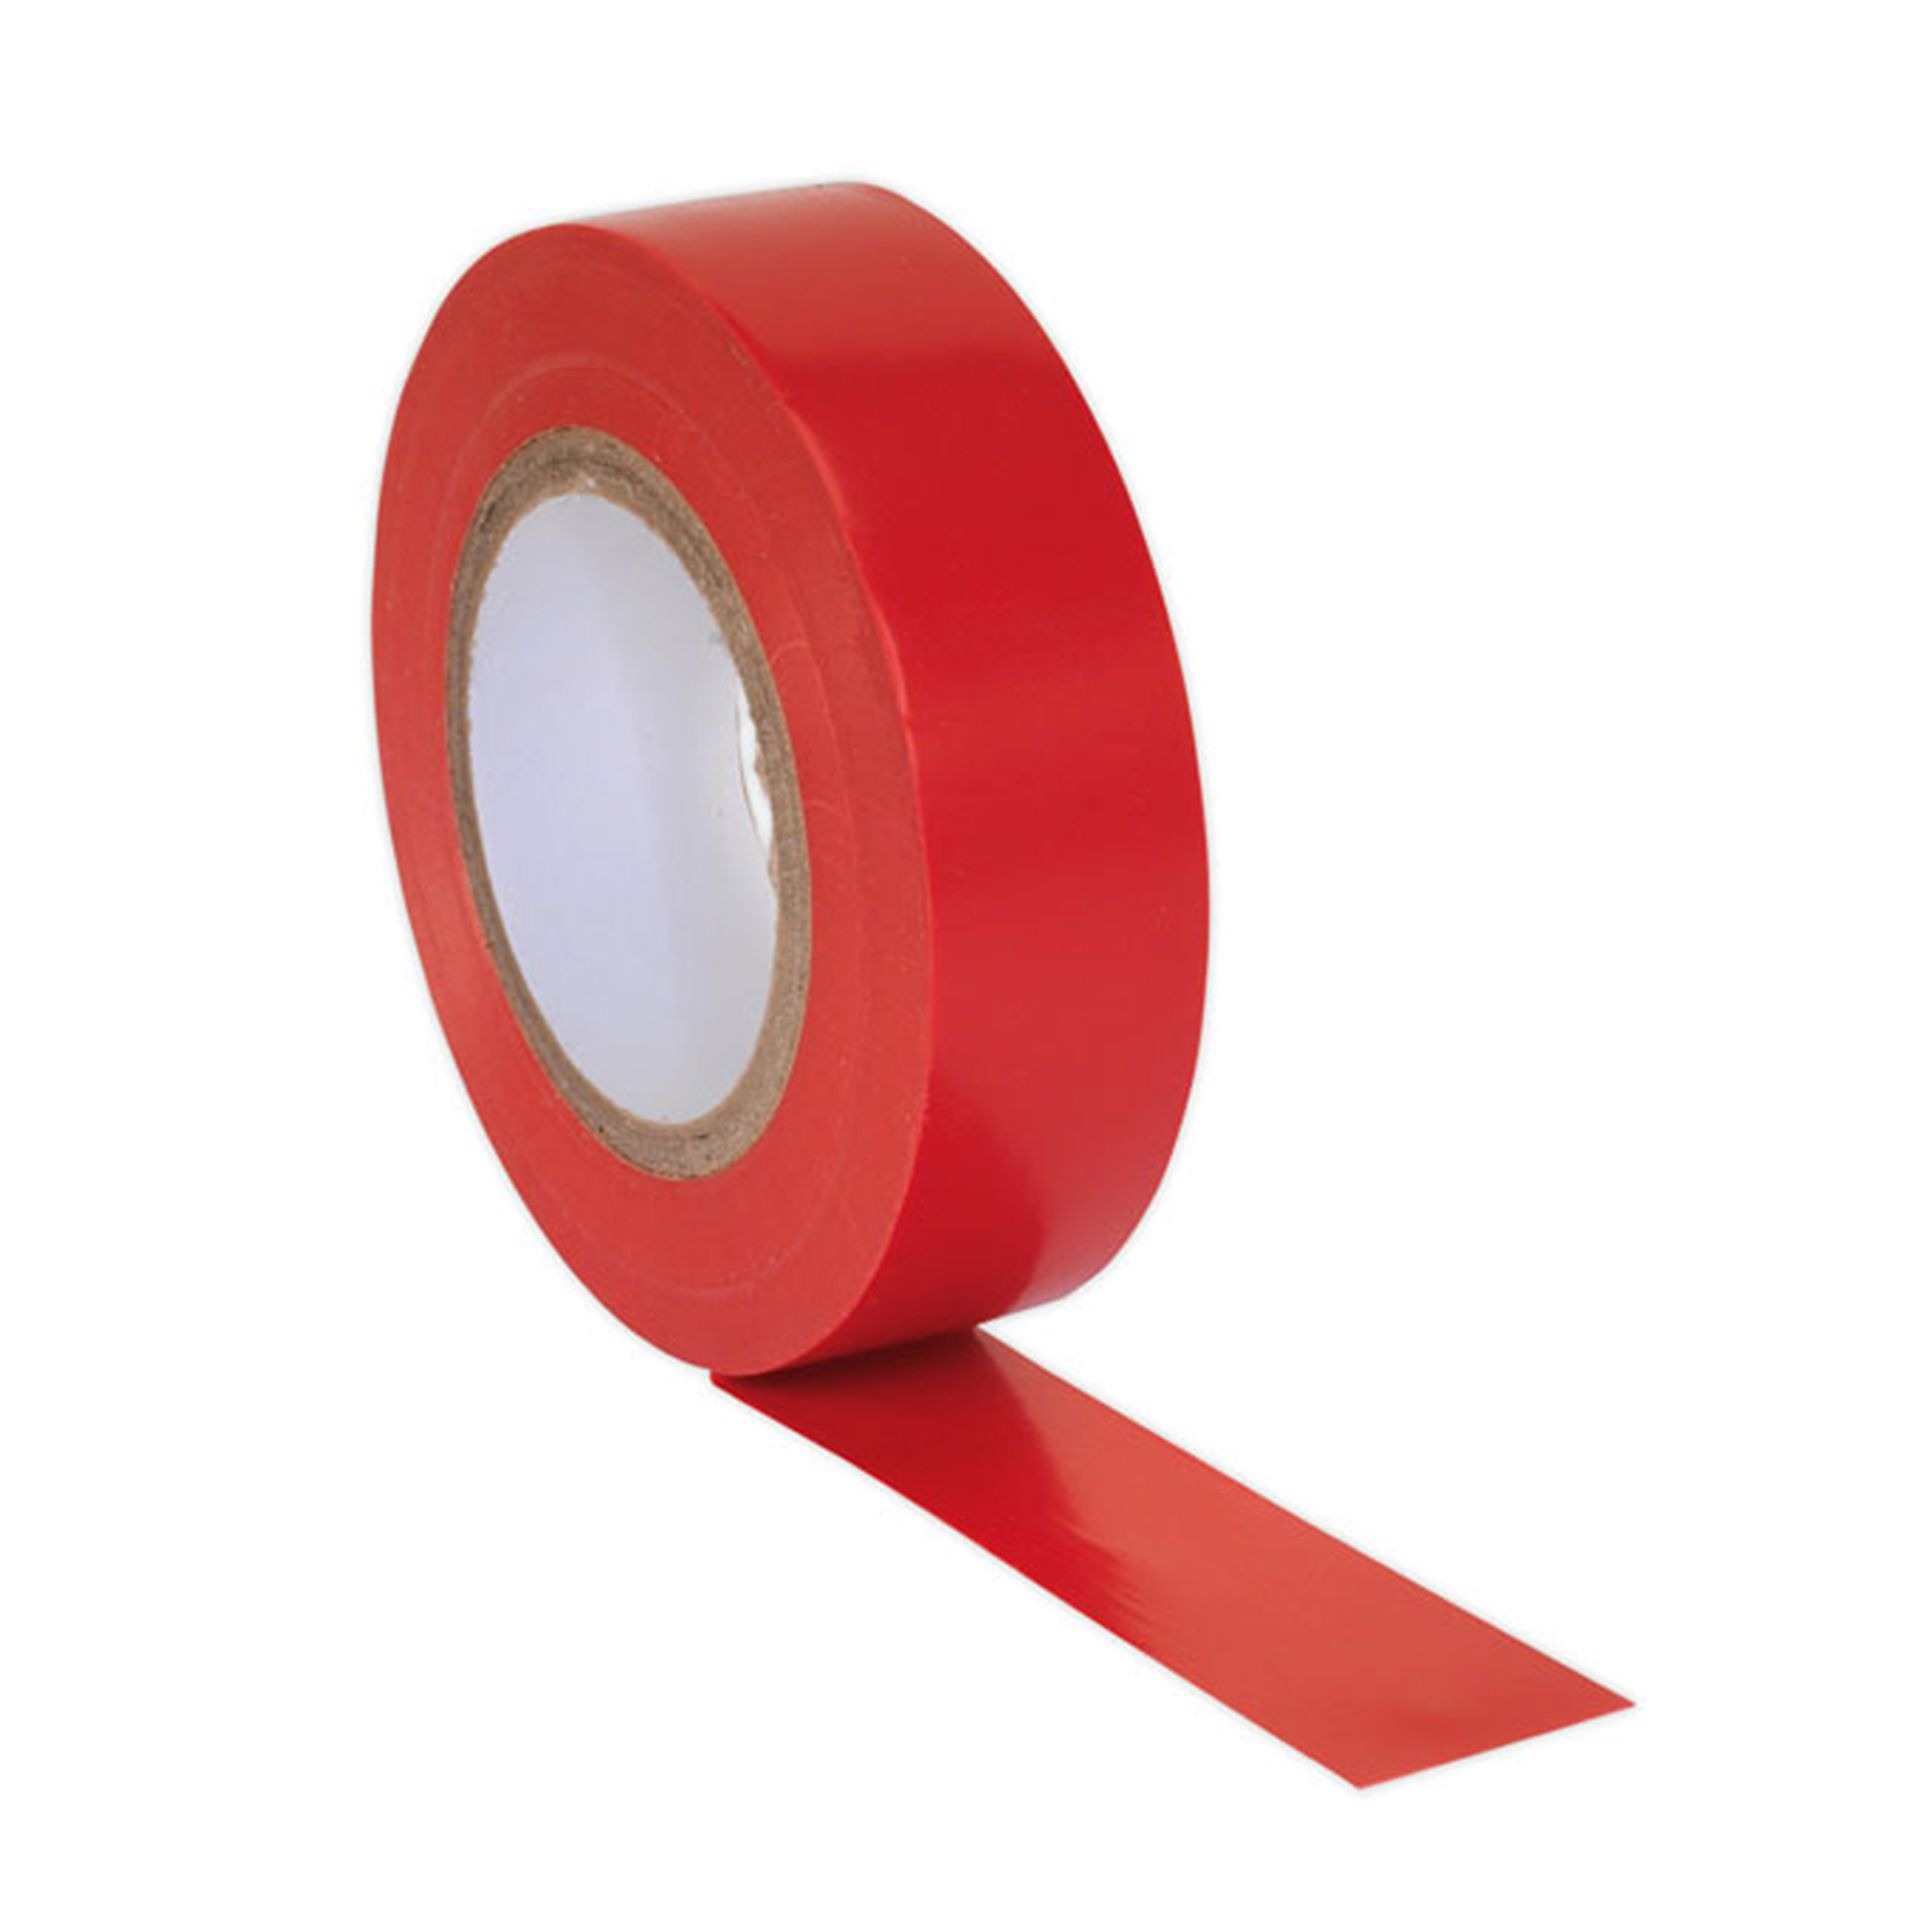 25mmx66m TEK 409 Red PVC Tape 1512 Rolls